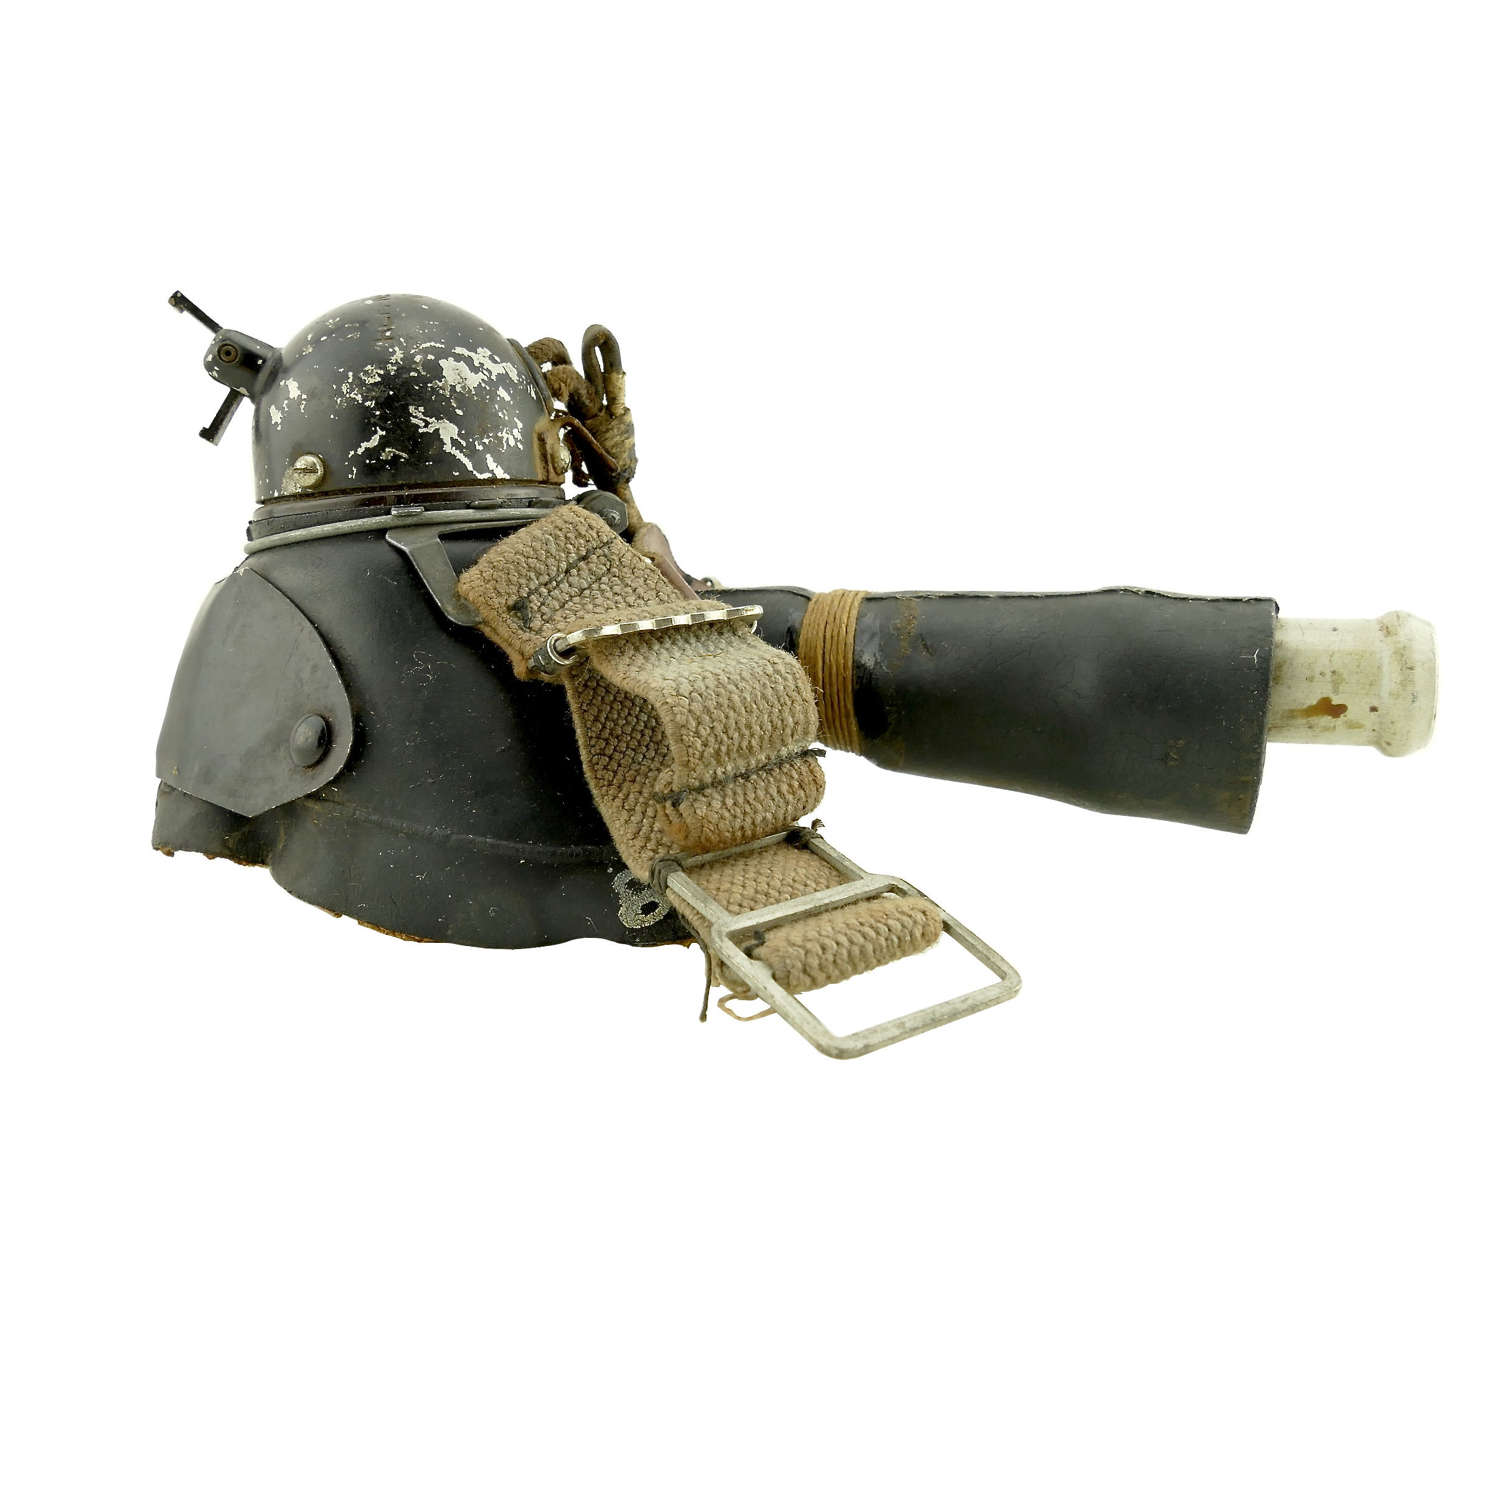 RAF type E* oxygen mask